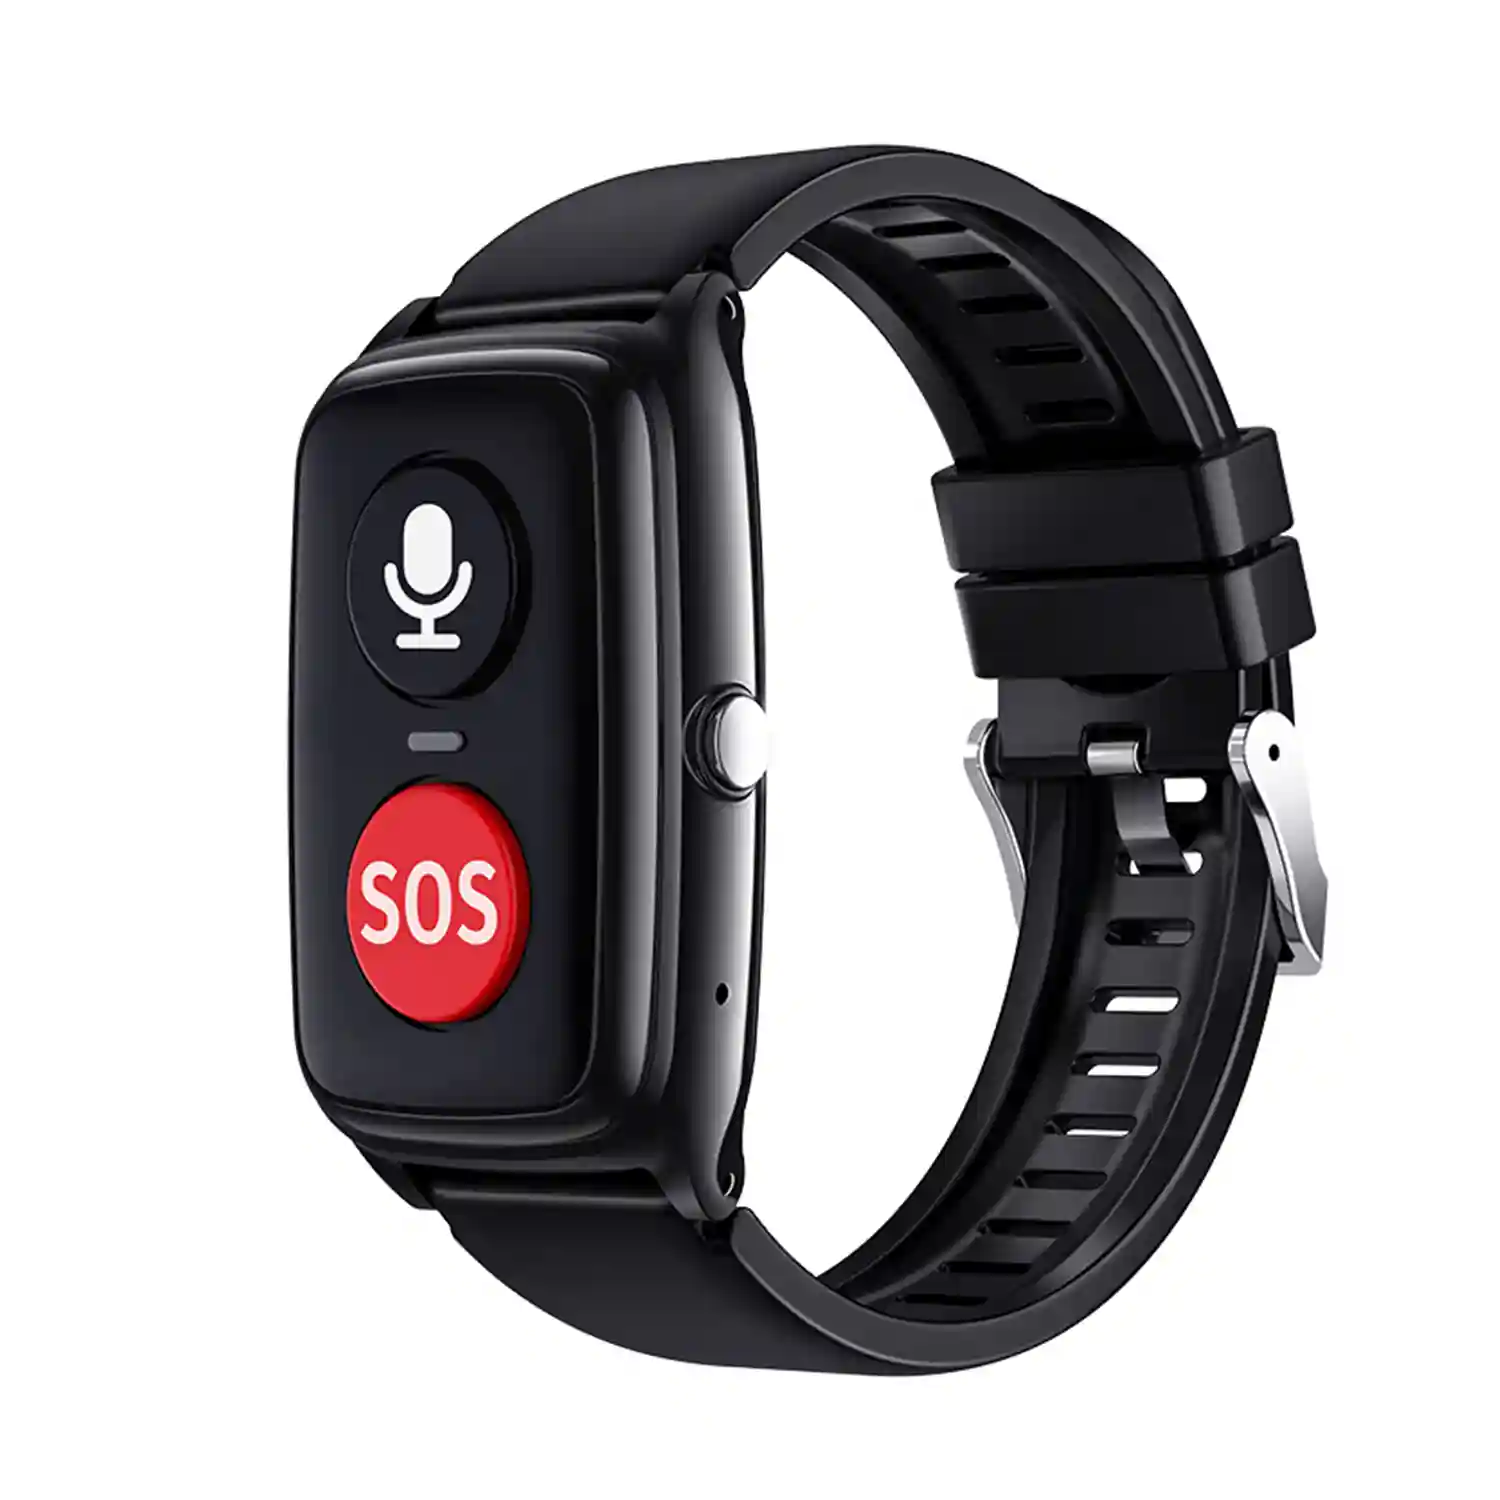 Smartwatch 4G D10-PRO localizador GPS, Wifi y LBS. Especial personas  mayores. Con termómetro y podómero.